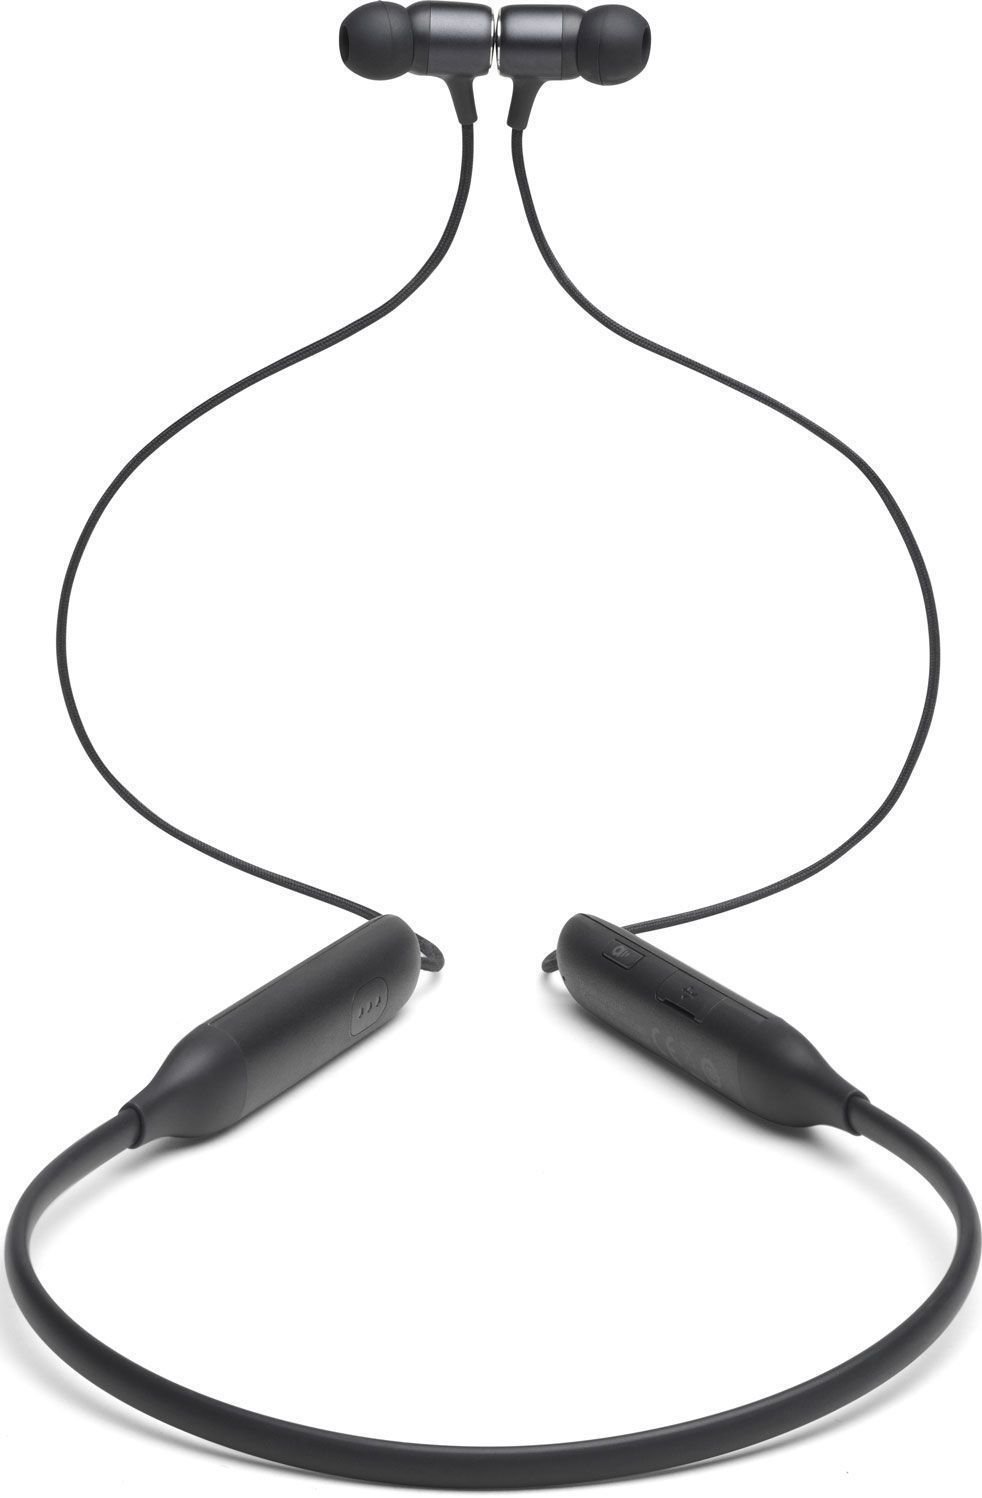 Auscultadores intra-auriculares sem fios JBL Live 220BT Preto